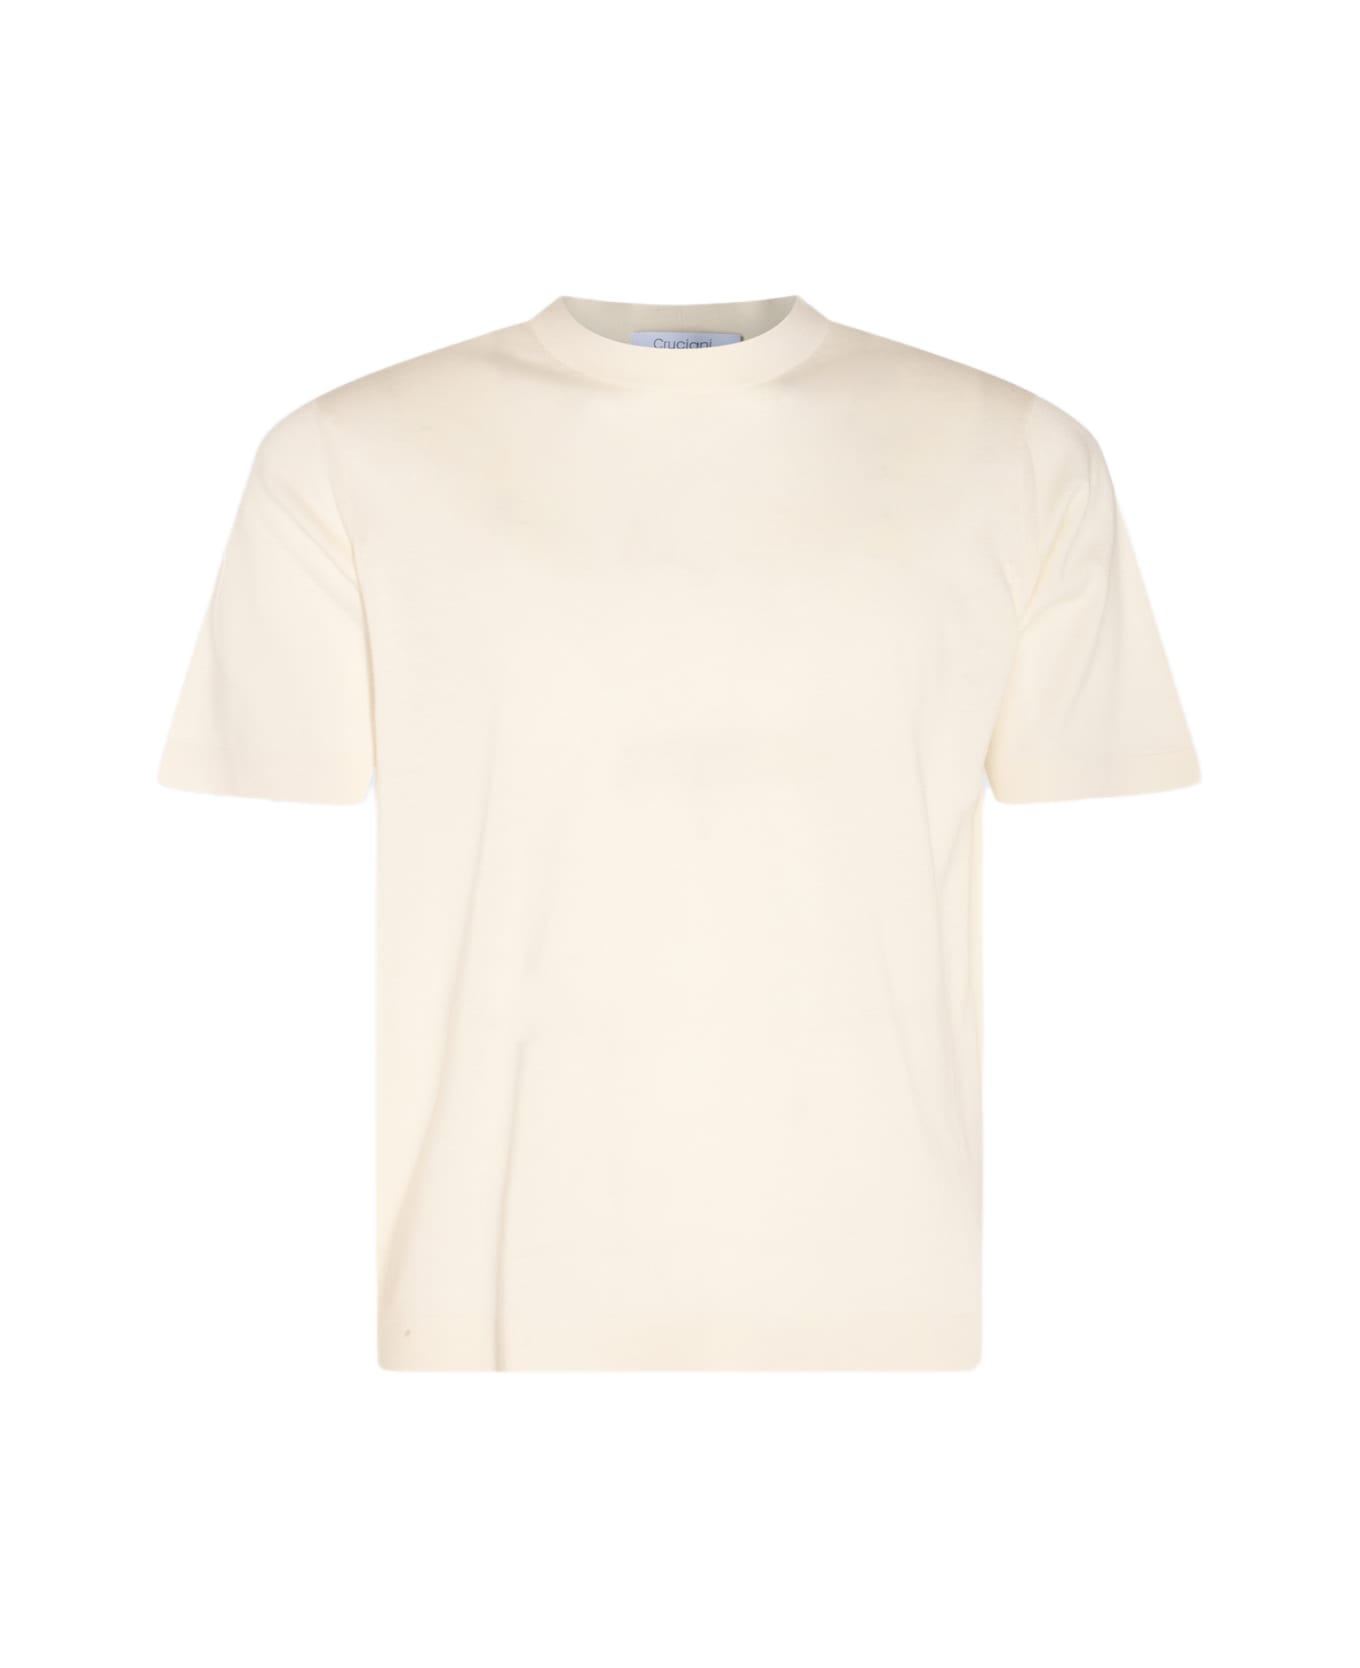 Cruciani White Cotton T-shirt - White シャツ